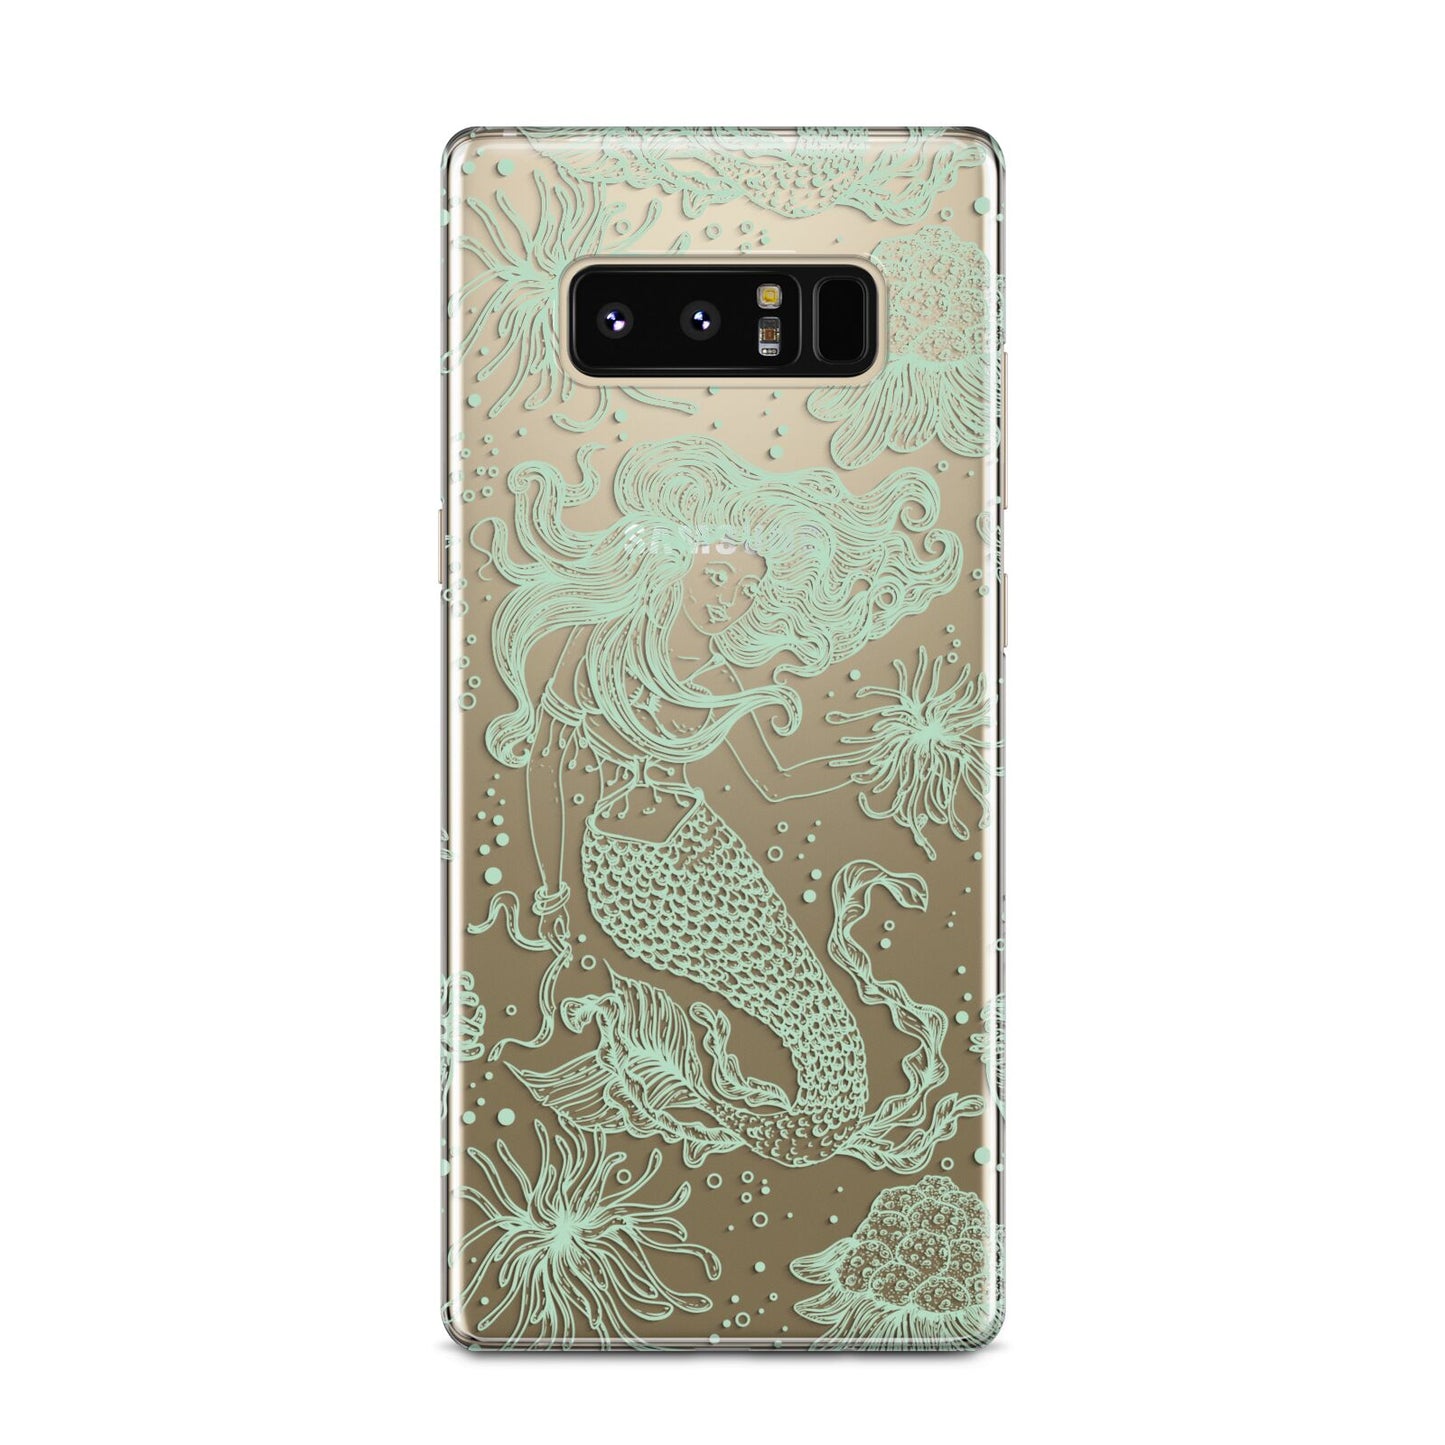 Sea Mermaid Samsung Galaxy Note 8 Case